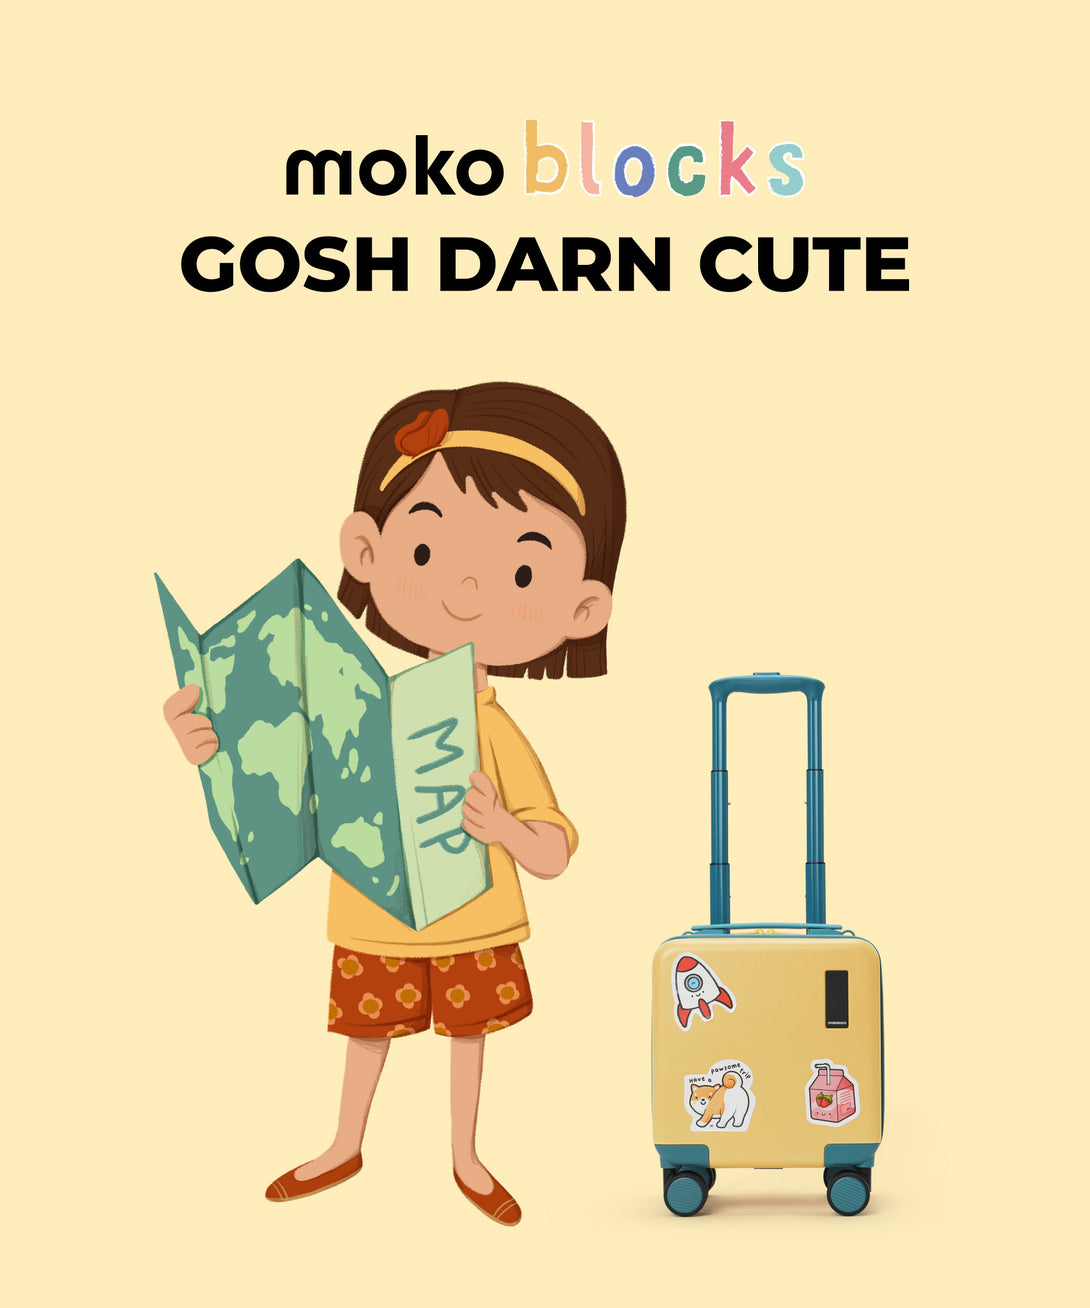 The Moko Blocks